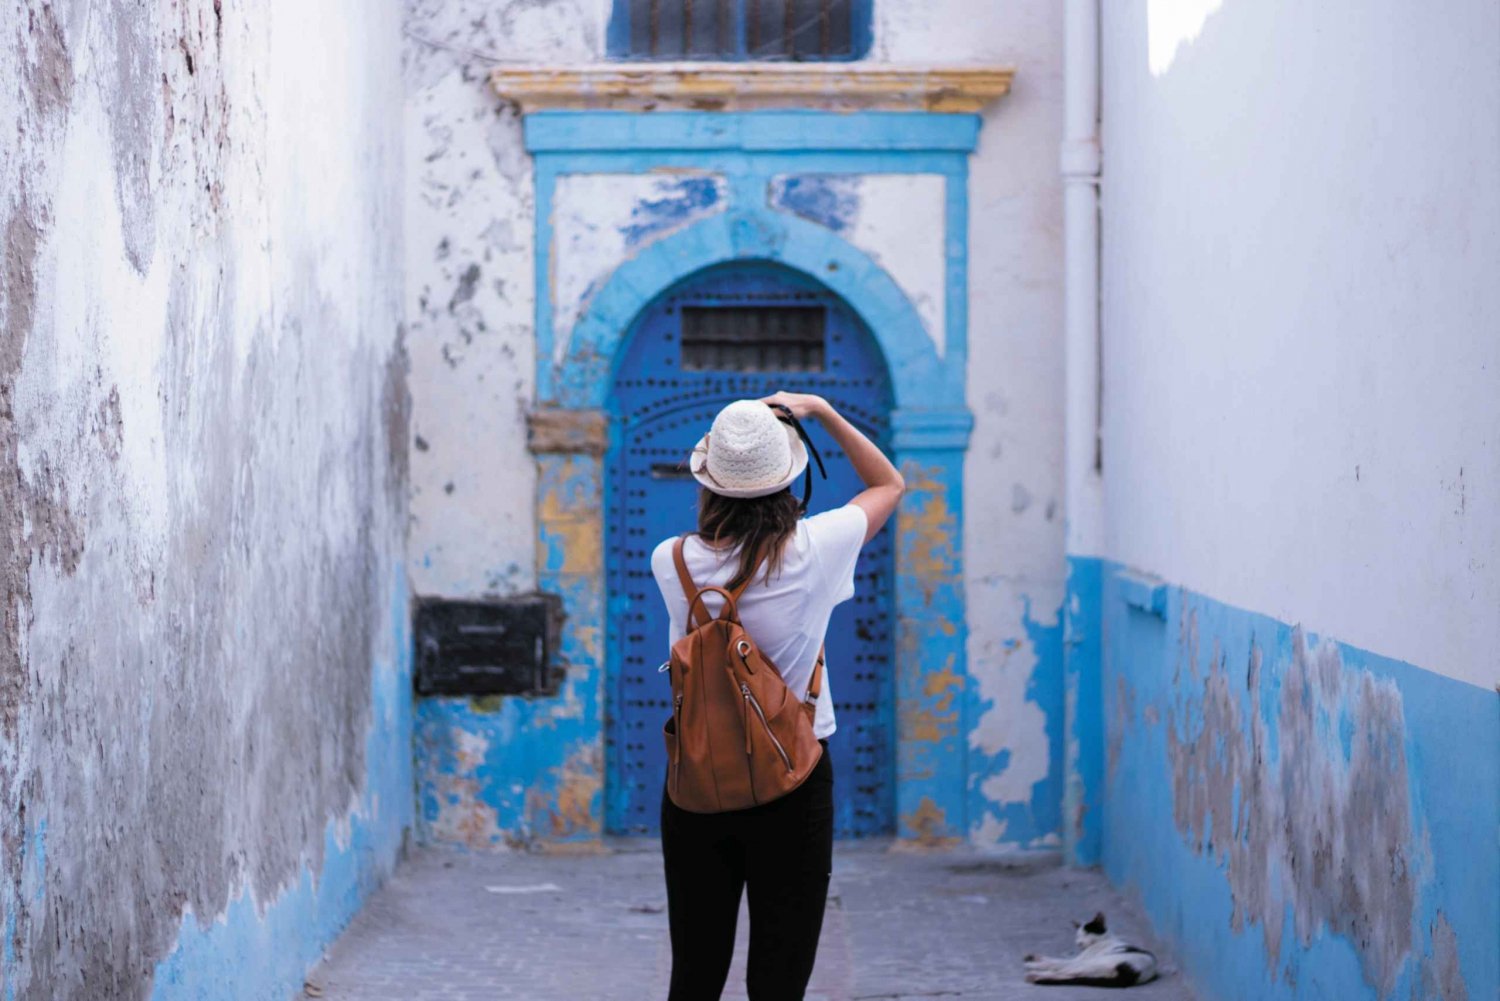 De Marrakech: viagem de um dia a Essaouira com embarque no hotel